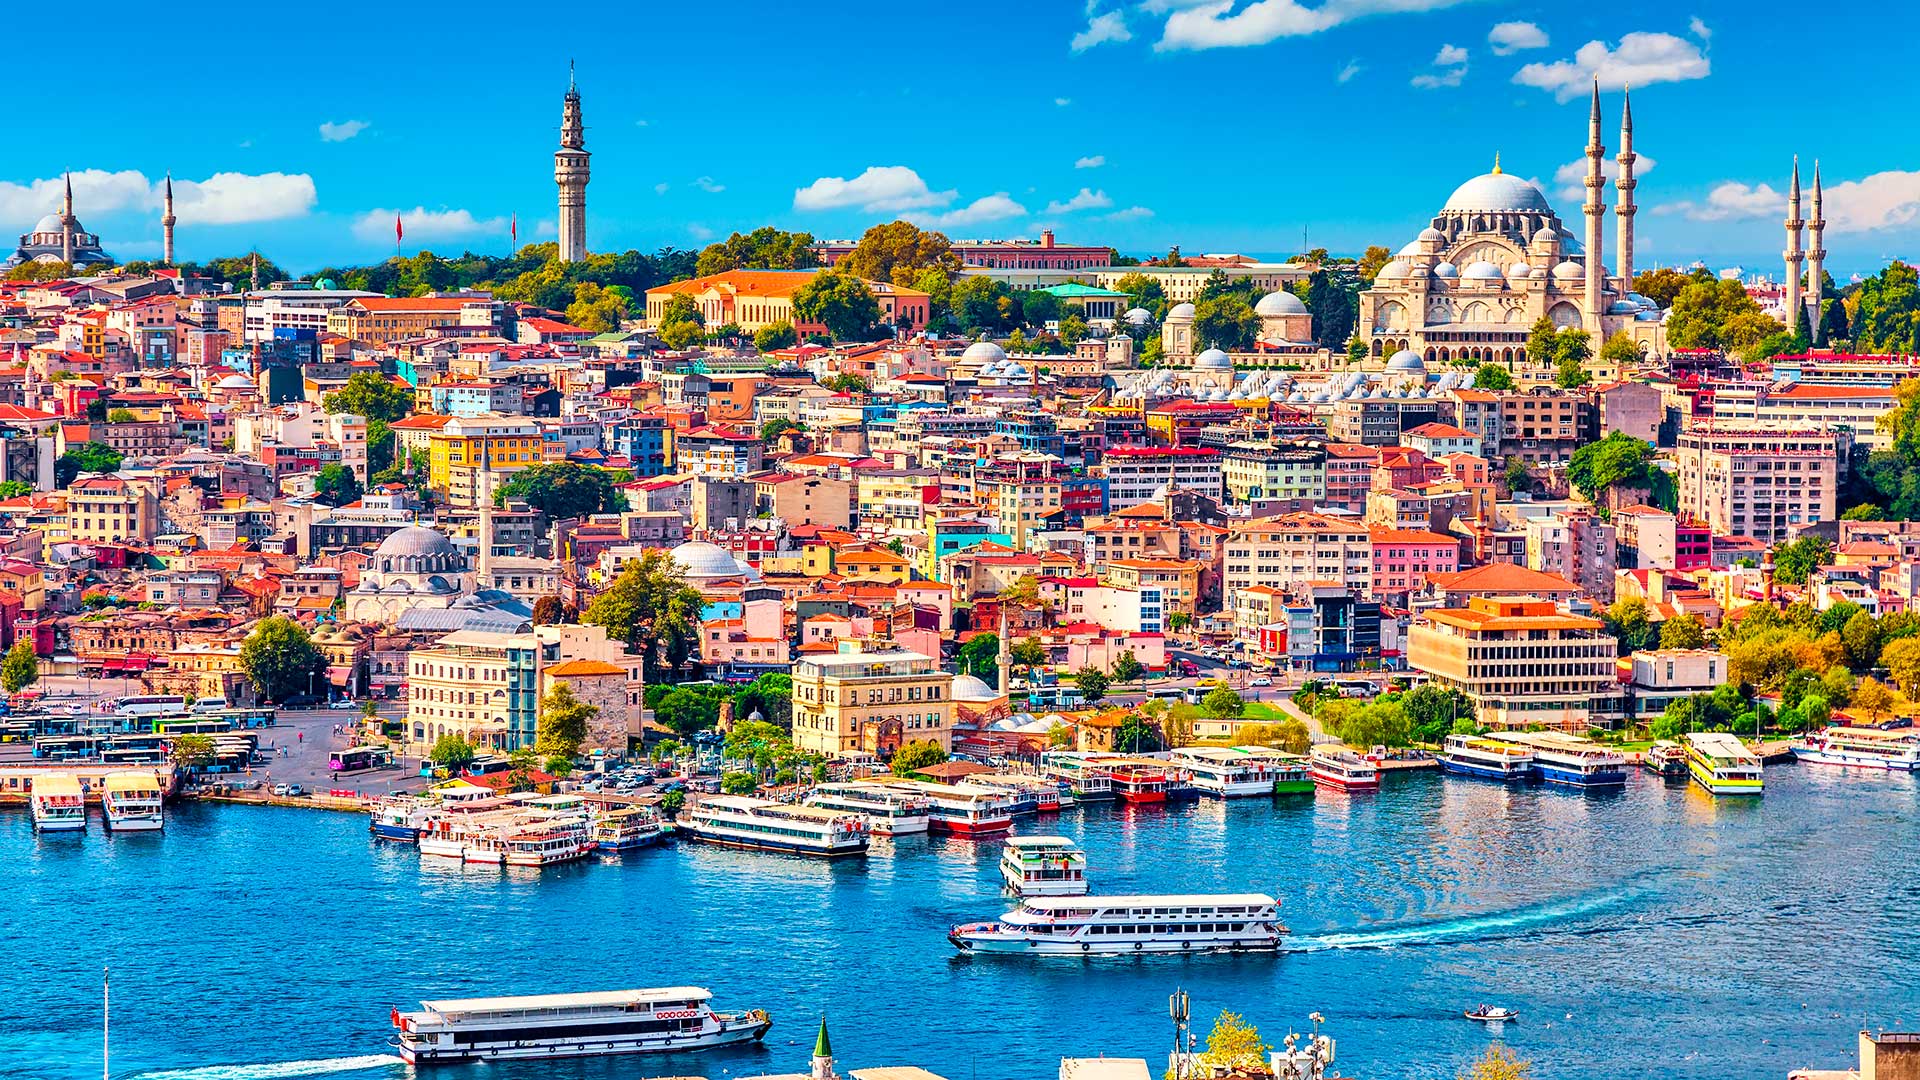 Стамбул, город в Турции, ПМЖ которой могут получить иностранцы